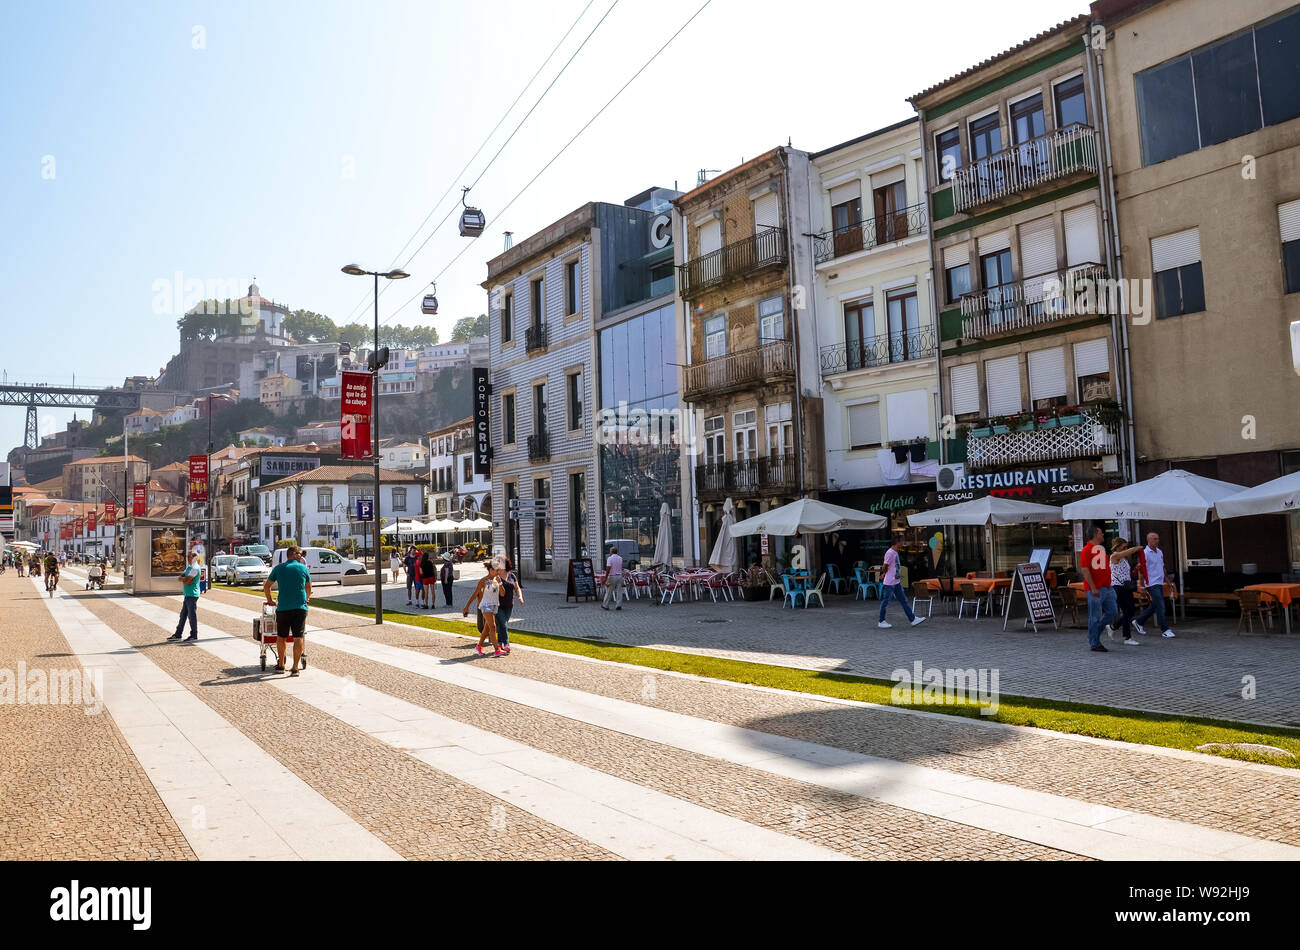 Porto, Portugal - 31 août 2018 : Les gens de marcher sur la promenade au bord du fleuve Douro lors d'une journée ensoleillée. Le remblai est plein de restaurants, bars et caves à vin utilisé pour l'échéance du célèbre vin de porto. Banque D'Images